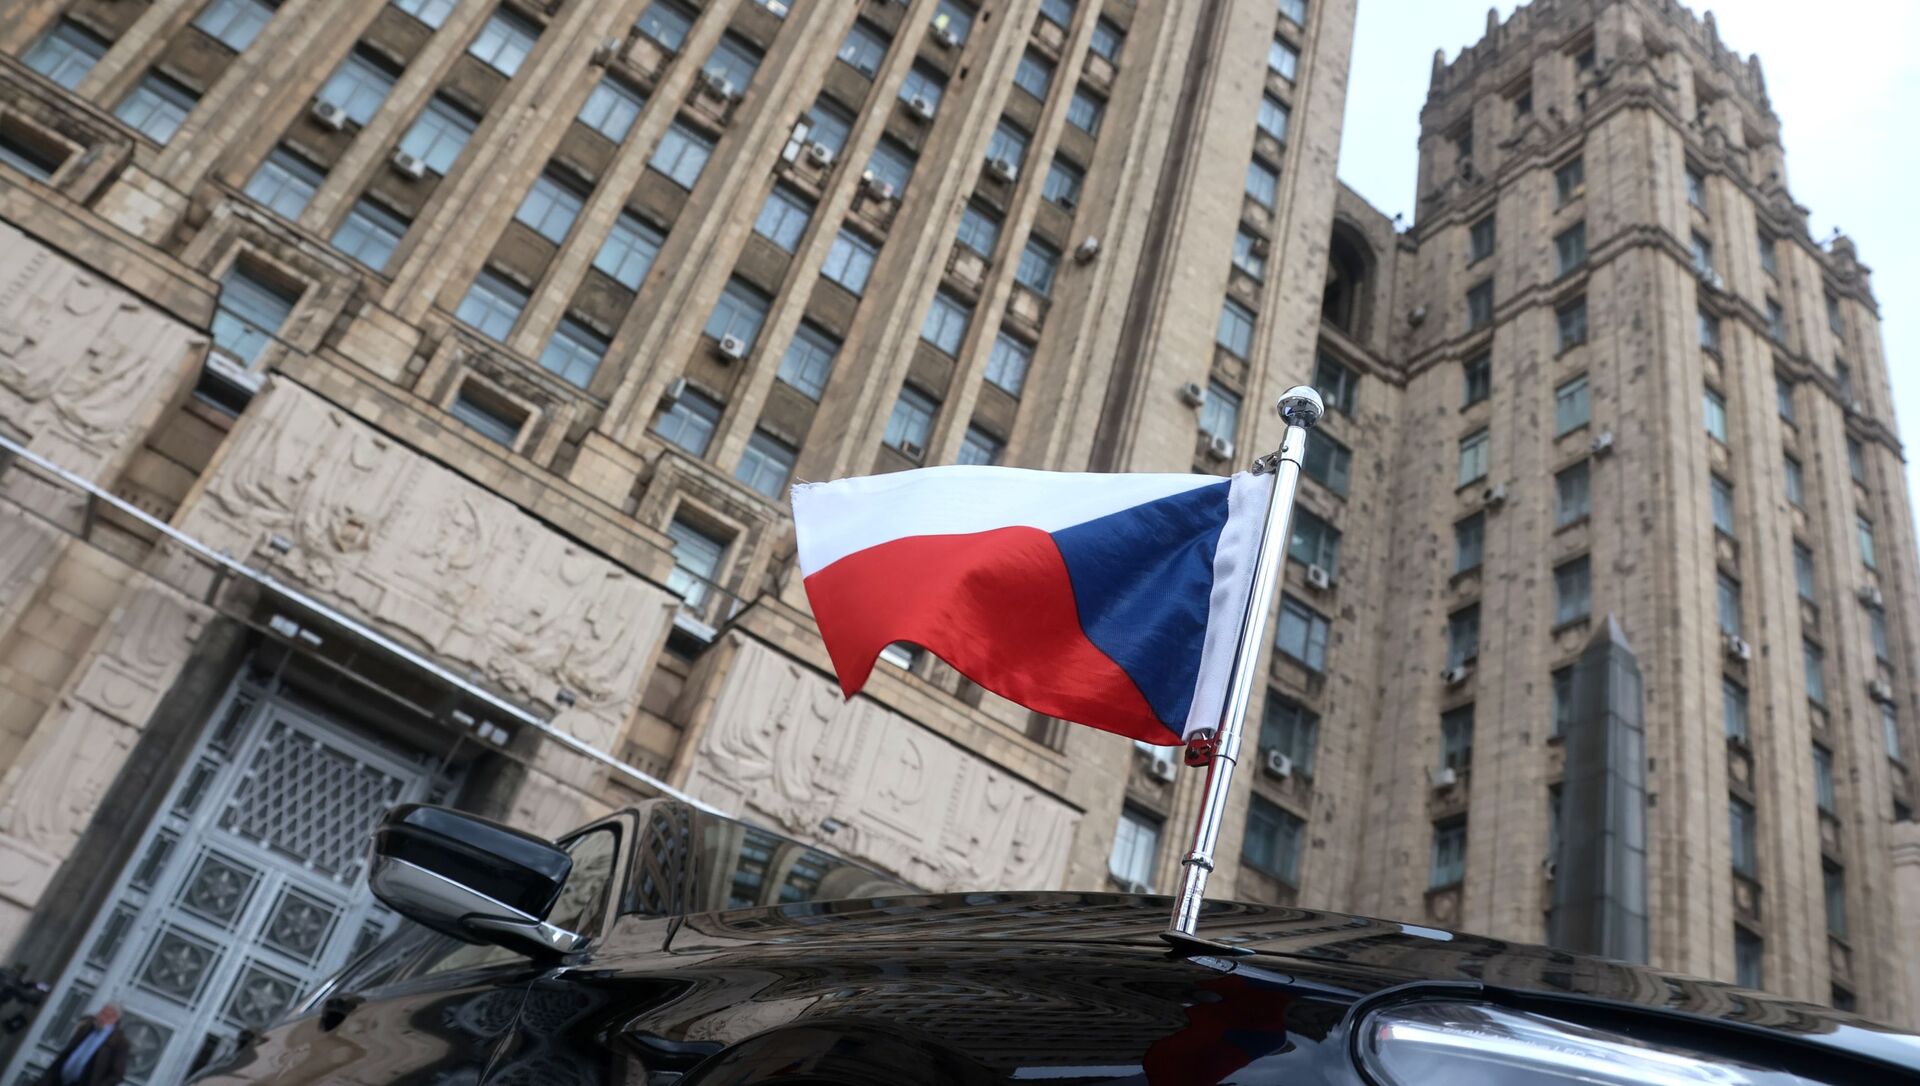 Застава на аутомобилу чешког амбасадора испред зграде Министарства спољних послова Русије у Москви - Sputnik Србија, 1920, 01.07.2021